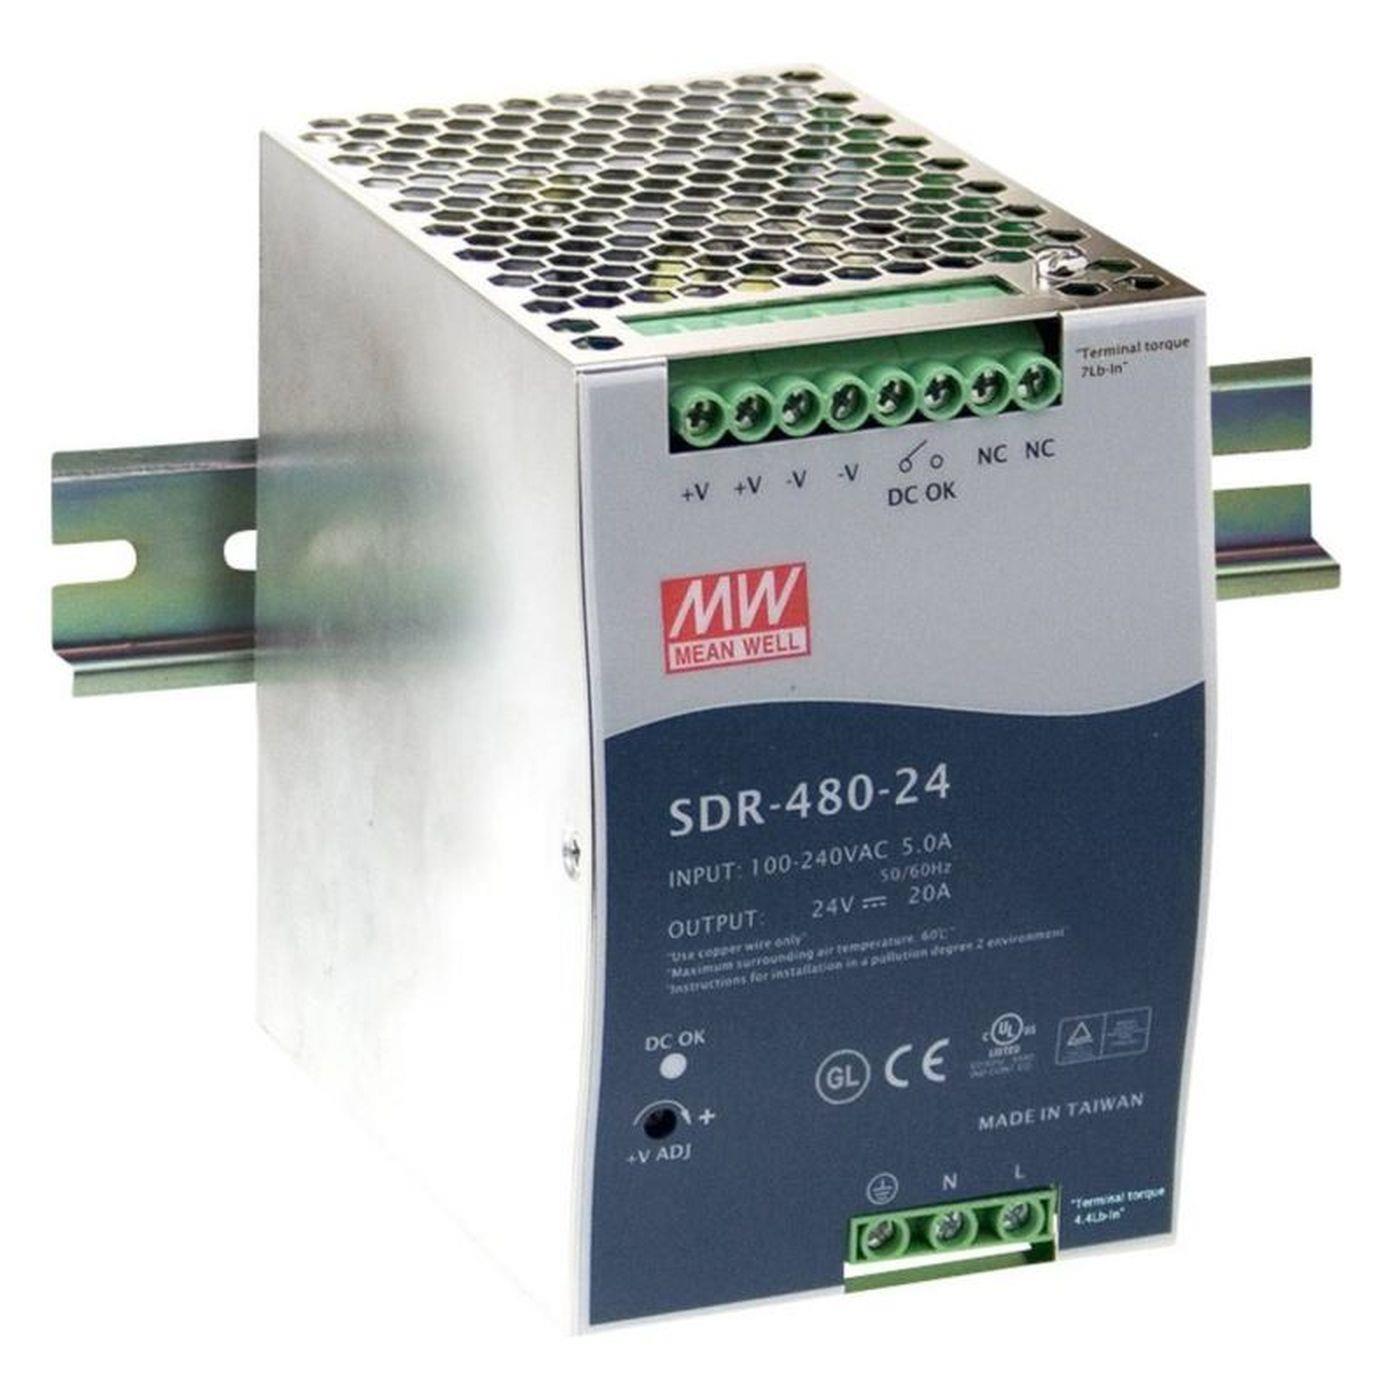 SDR-480-24 480W 24V 20A Din Rail power supply